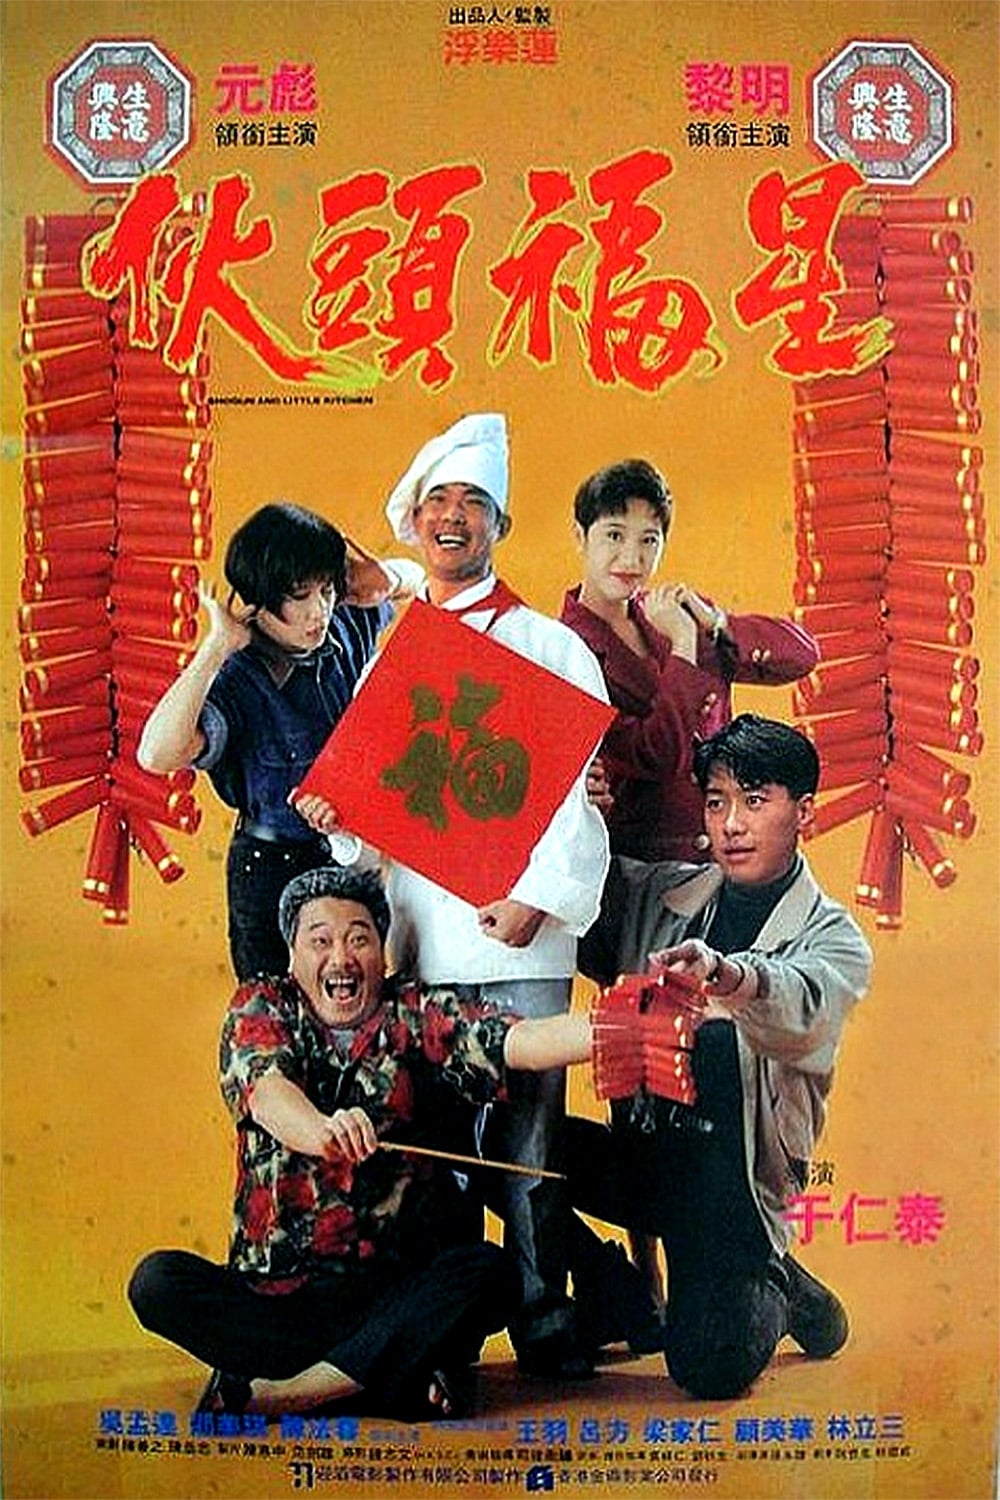 Shogun and Little Kitchen (1992)